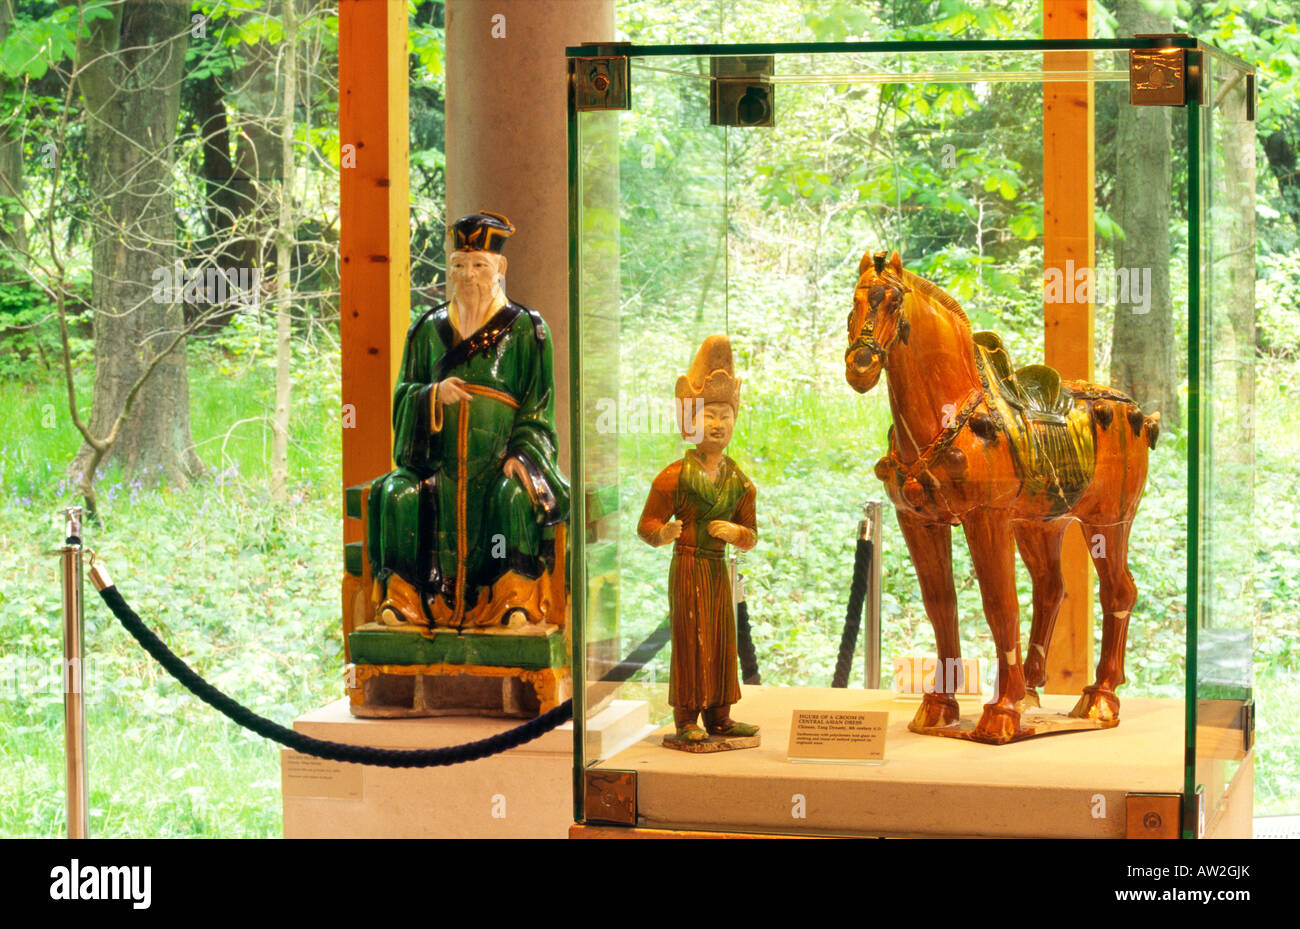 Burrell Collection Galería de exposición de arte, Glasgow, Escocia. Antigüedades chinas. El novio y el caballo de la dinastía Tang 8C. Foto de stock